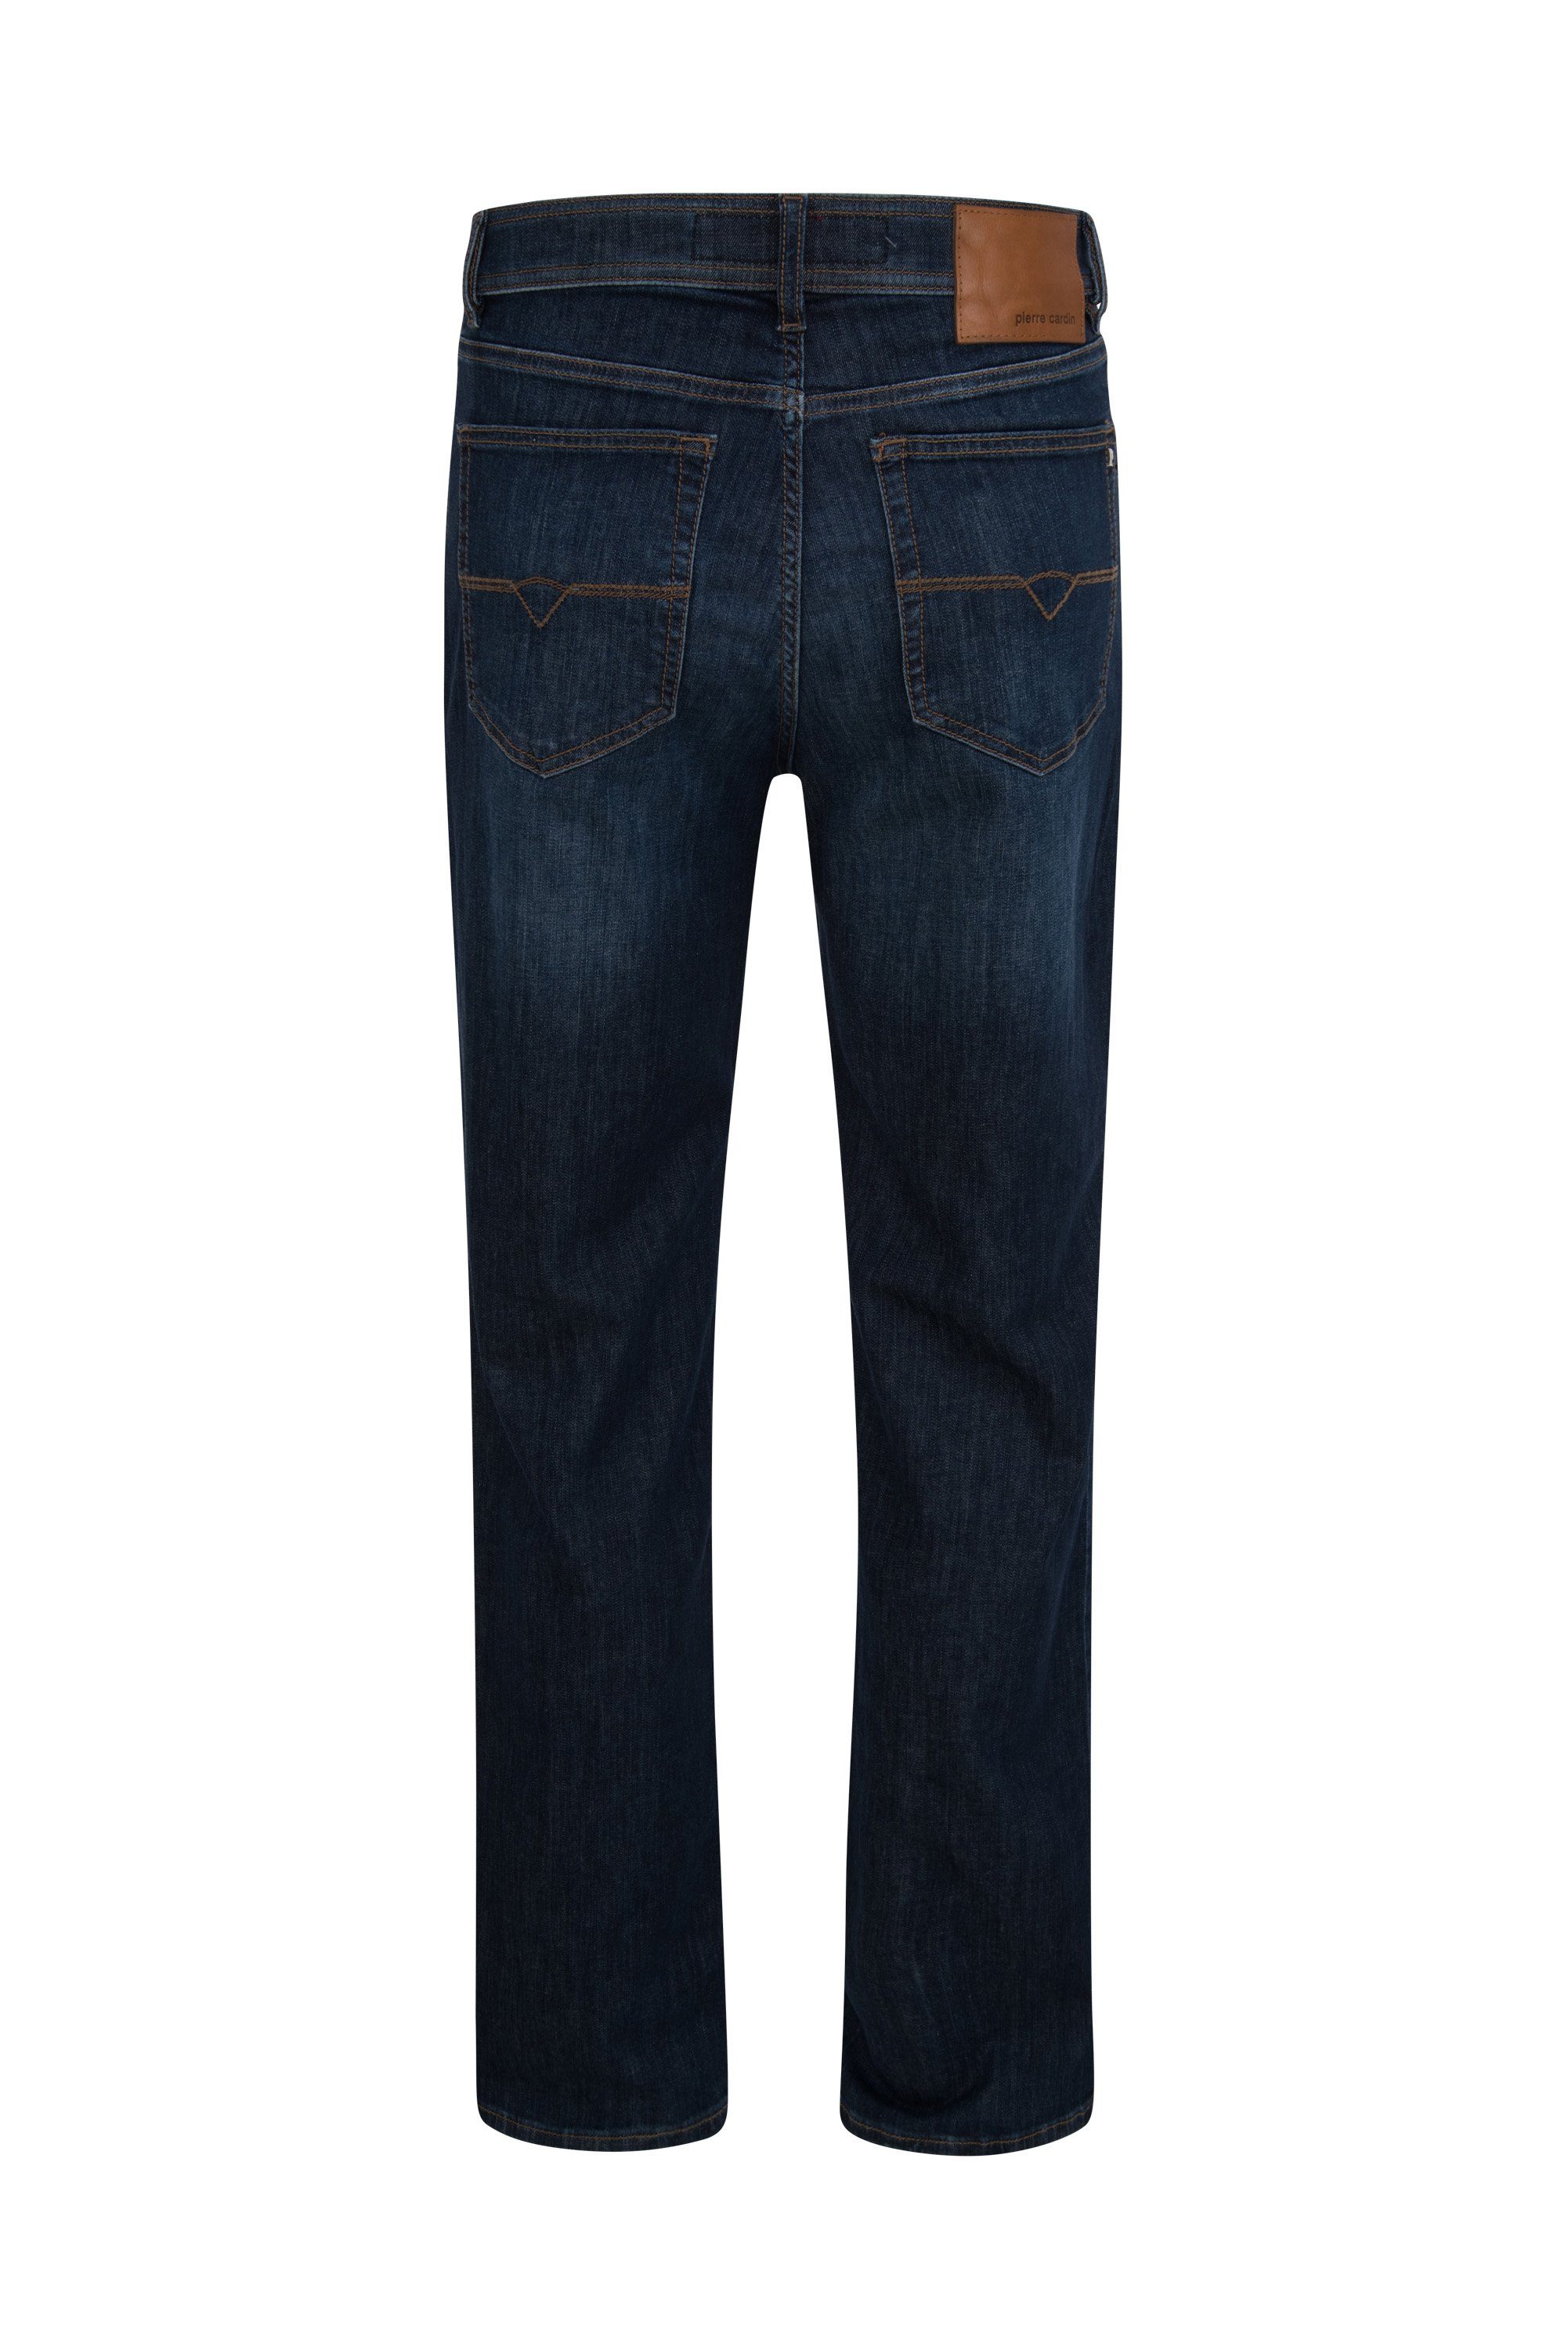 5-Pocket-Jeans 7011.11 rinsed PIERRE blue Cardin dark Pierre PREMIUM CARDIN - INDIGO 3231 DIJON